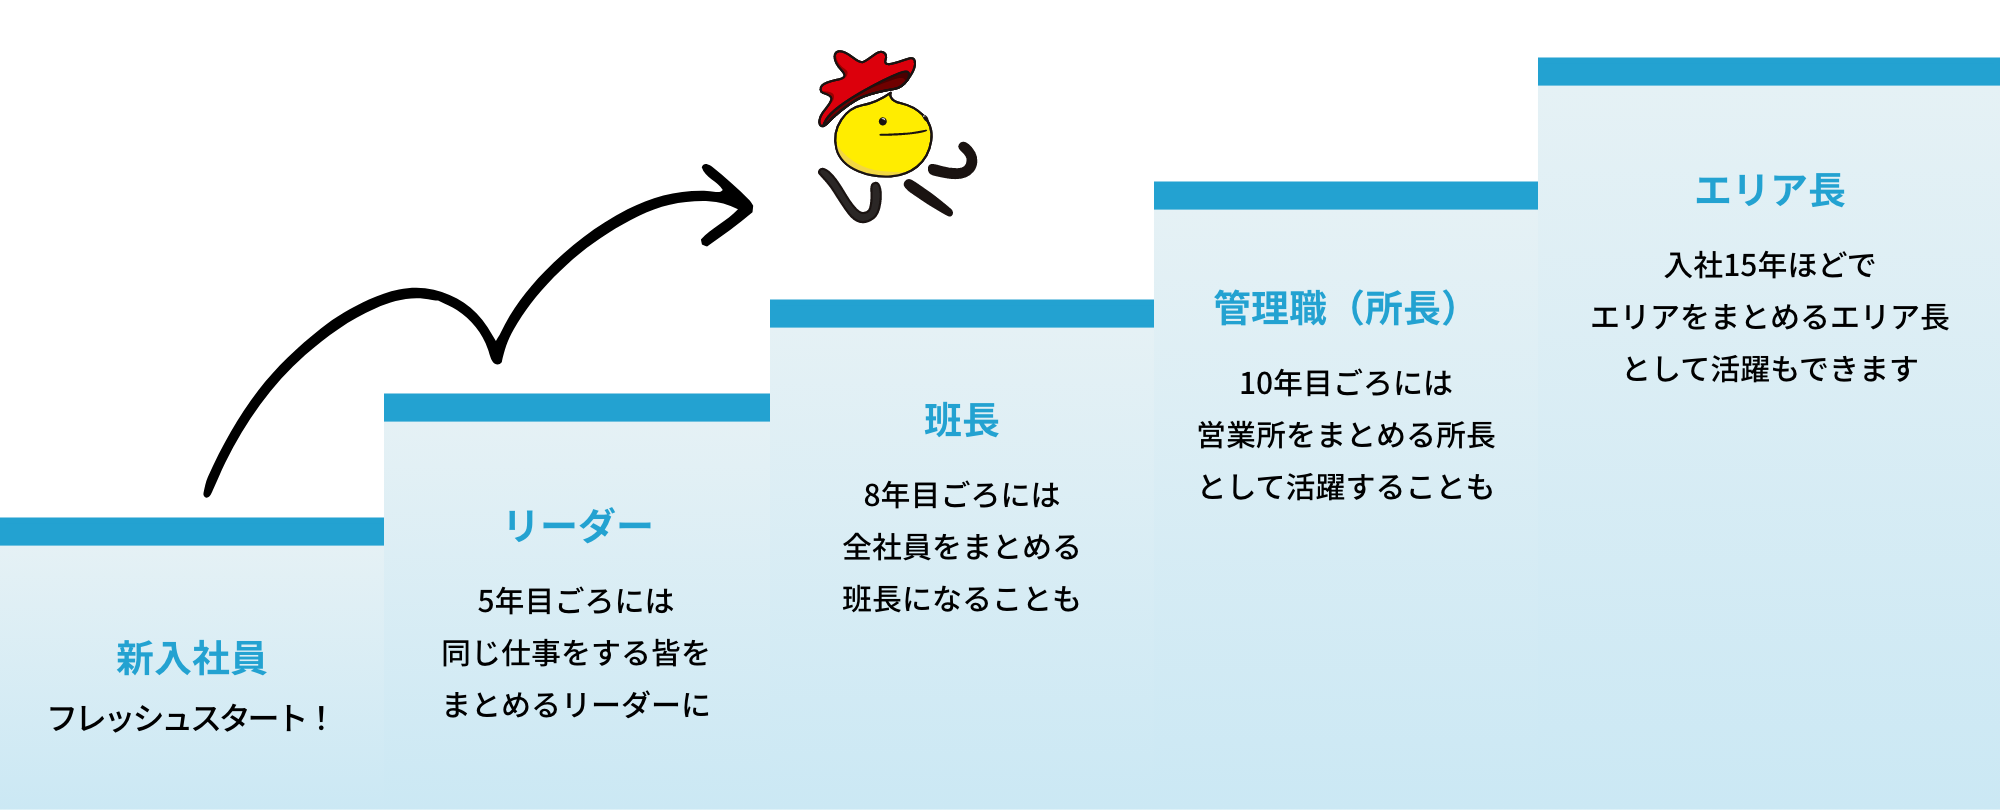 大阪運輸のキャリアステップイメージ